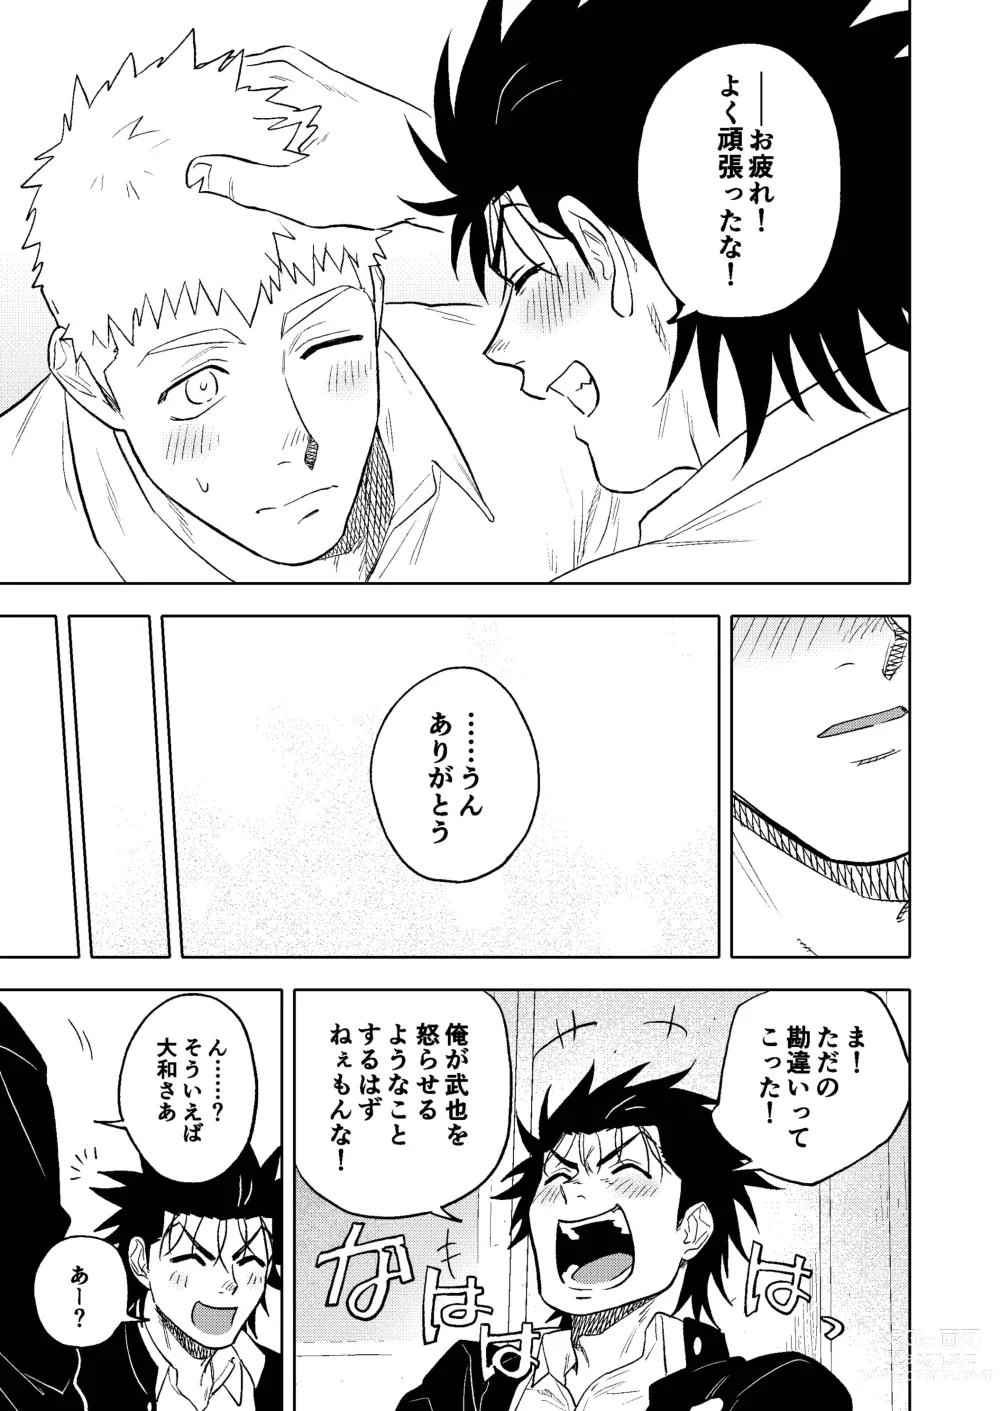 Page 44 of doujinshi Dainarishounari 2